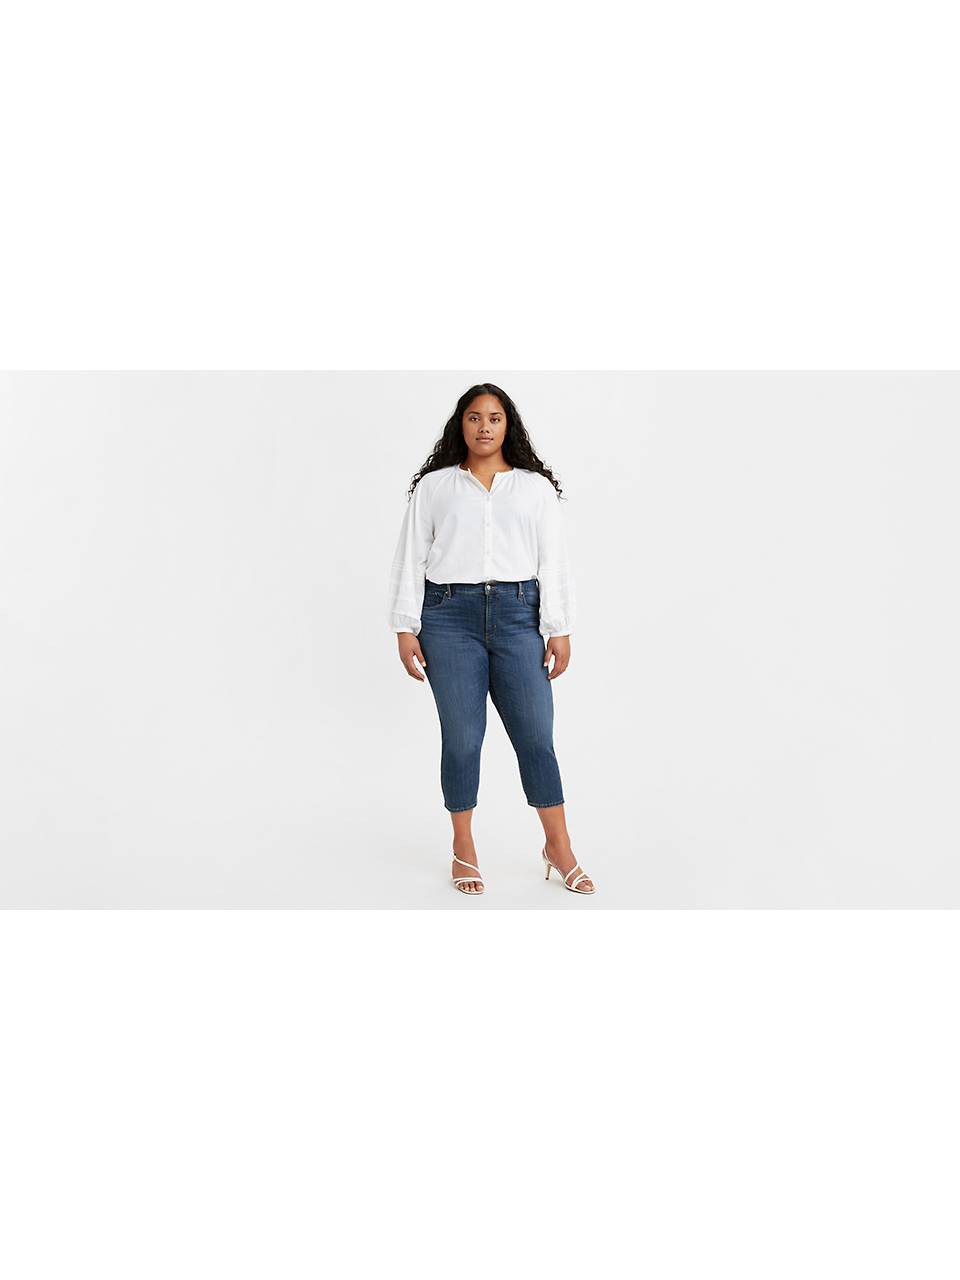 Hændelse volatilitet Glat Plus Size Jeans: Shop Plus Size Jeans for Women | Levi's® US